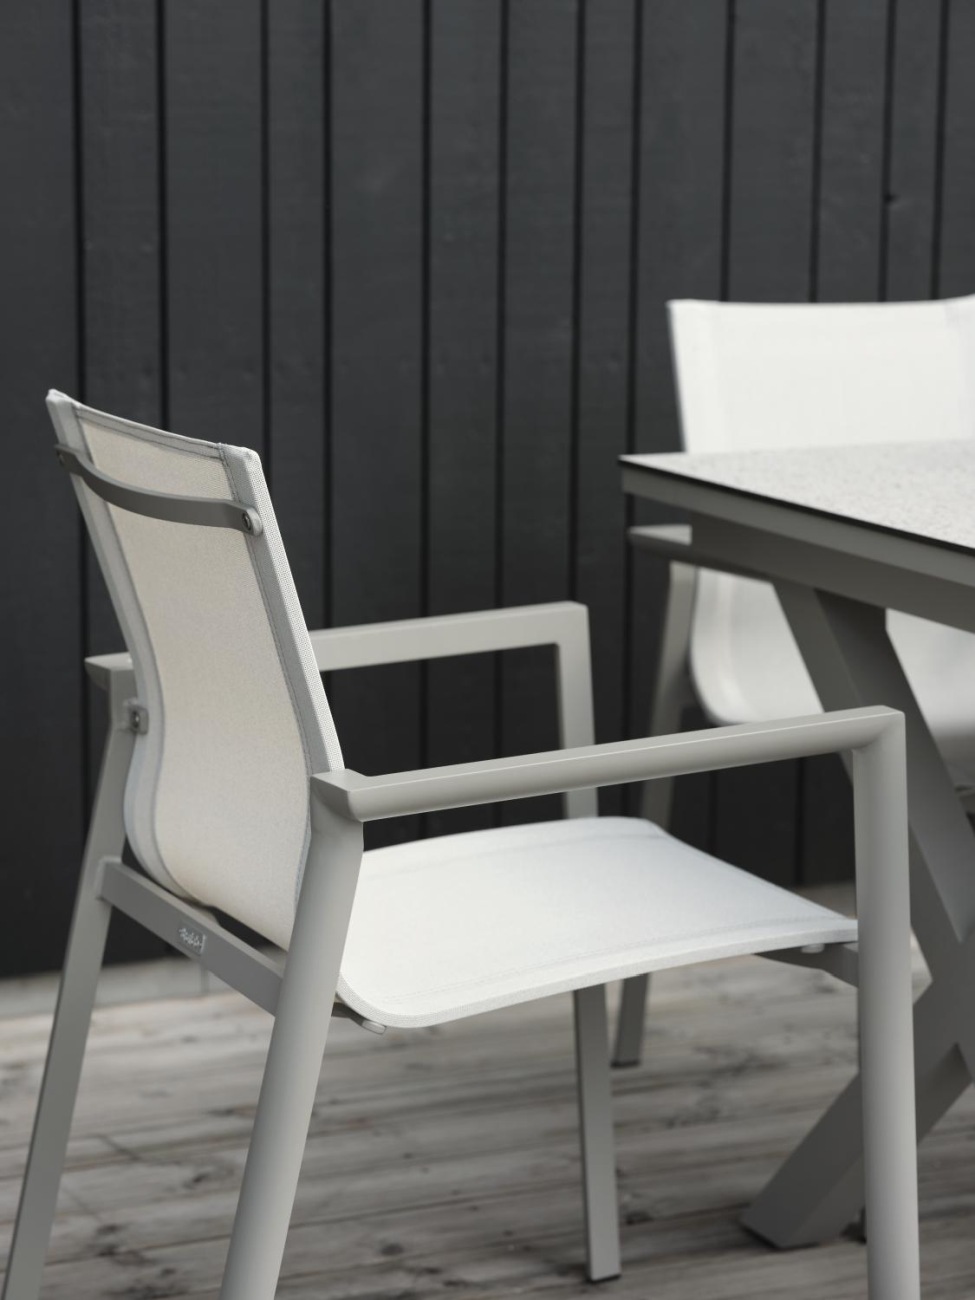 Der Gartenstuhl Delia überzeugt mit seinem modernen Design. Gefertigt wurde er aus Textilene, welches einen weißen Farbton besitzt. Das Gestell ist aus Metall und hat eine kaki Farbe. Die Sitzhöhe des Stuhls beträgt 43 cm.